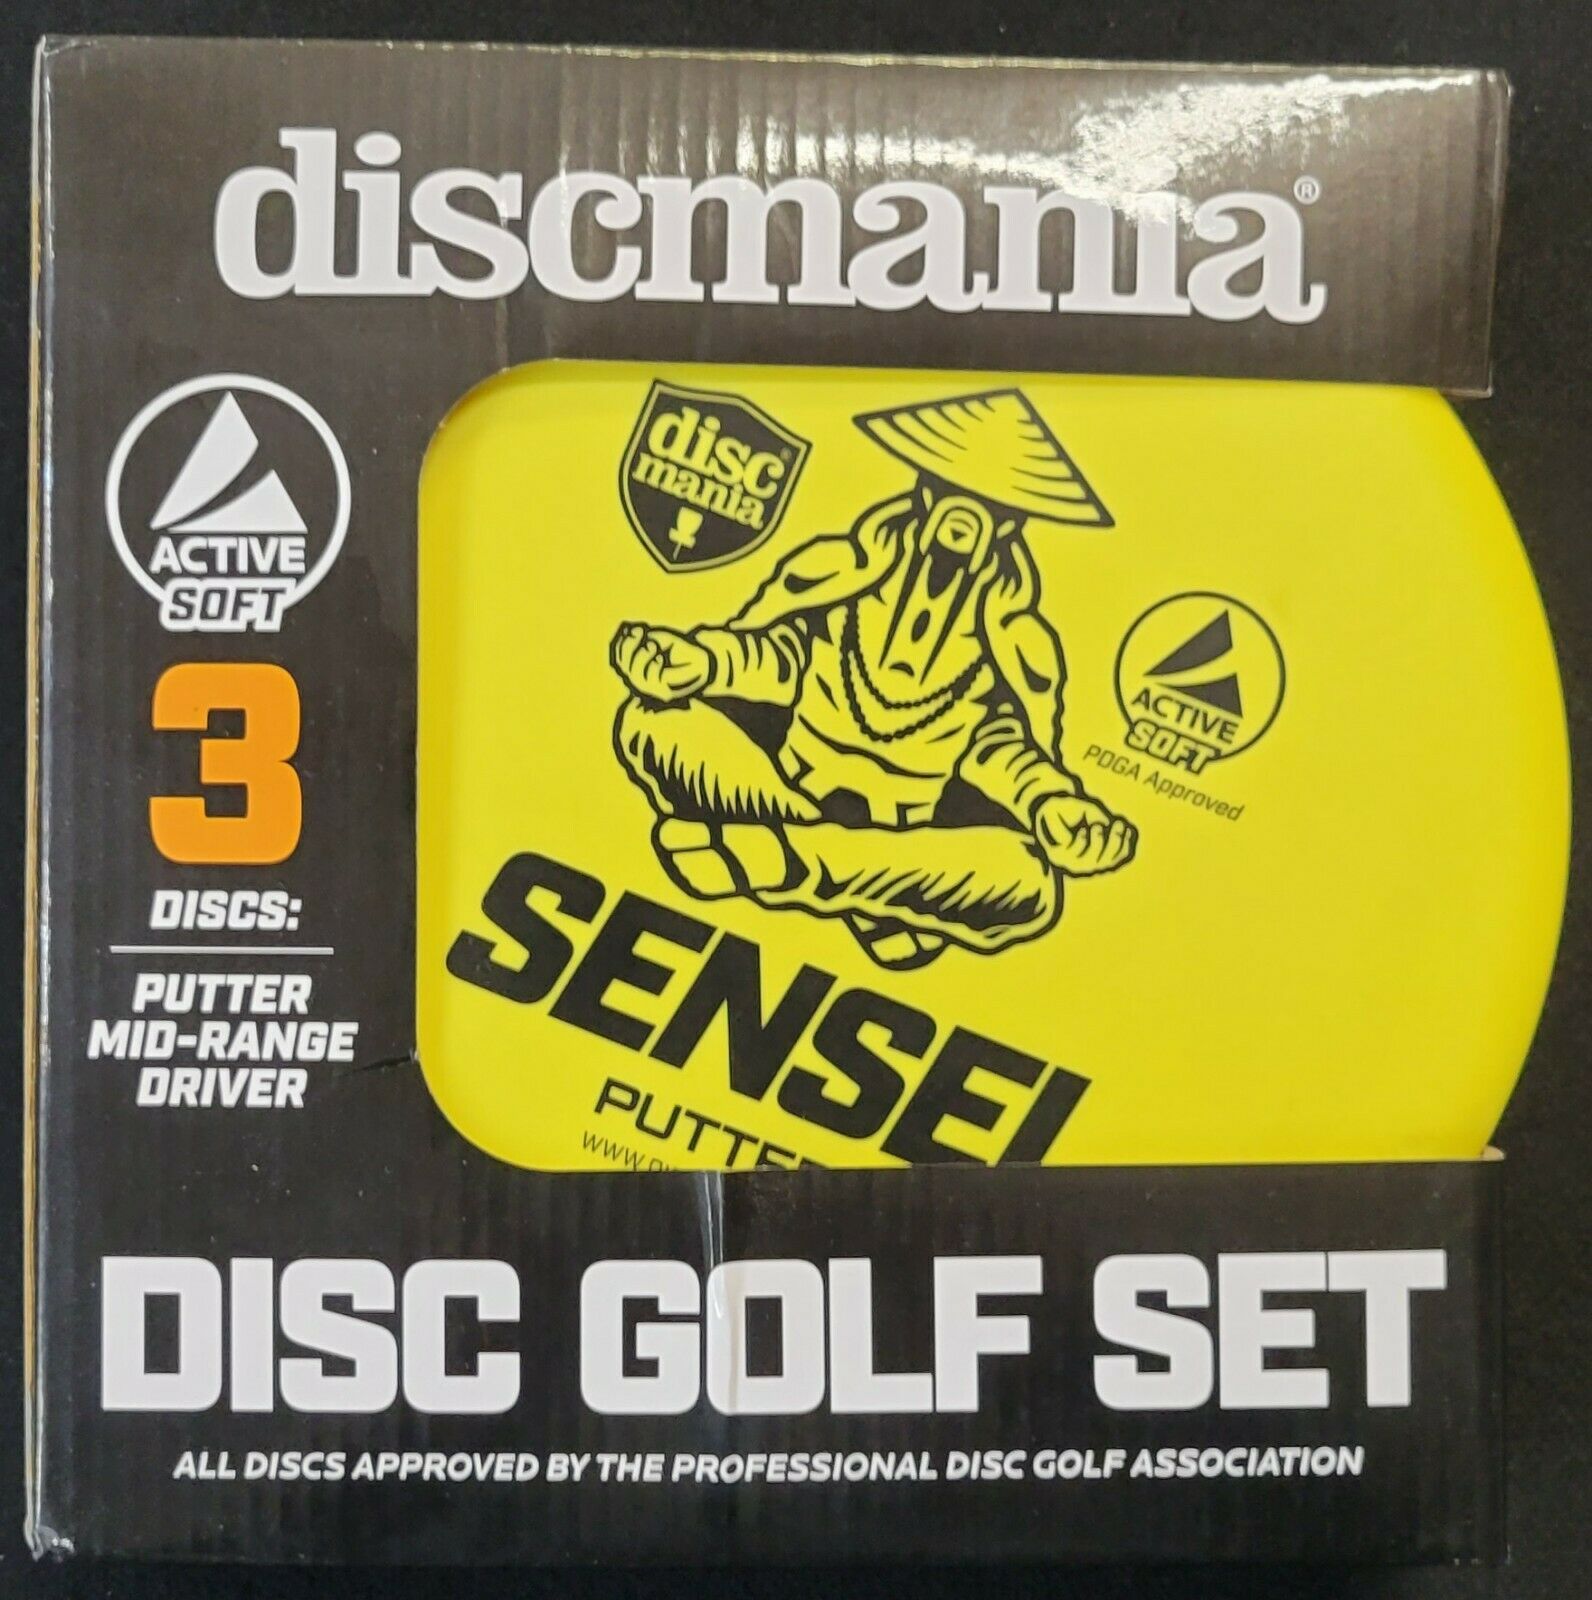 Discmania Active Soft 3-disc Box Set